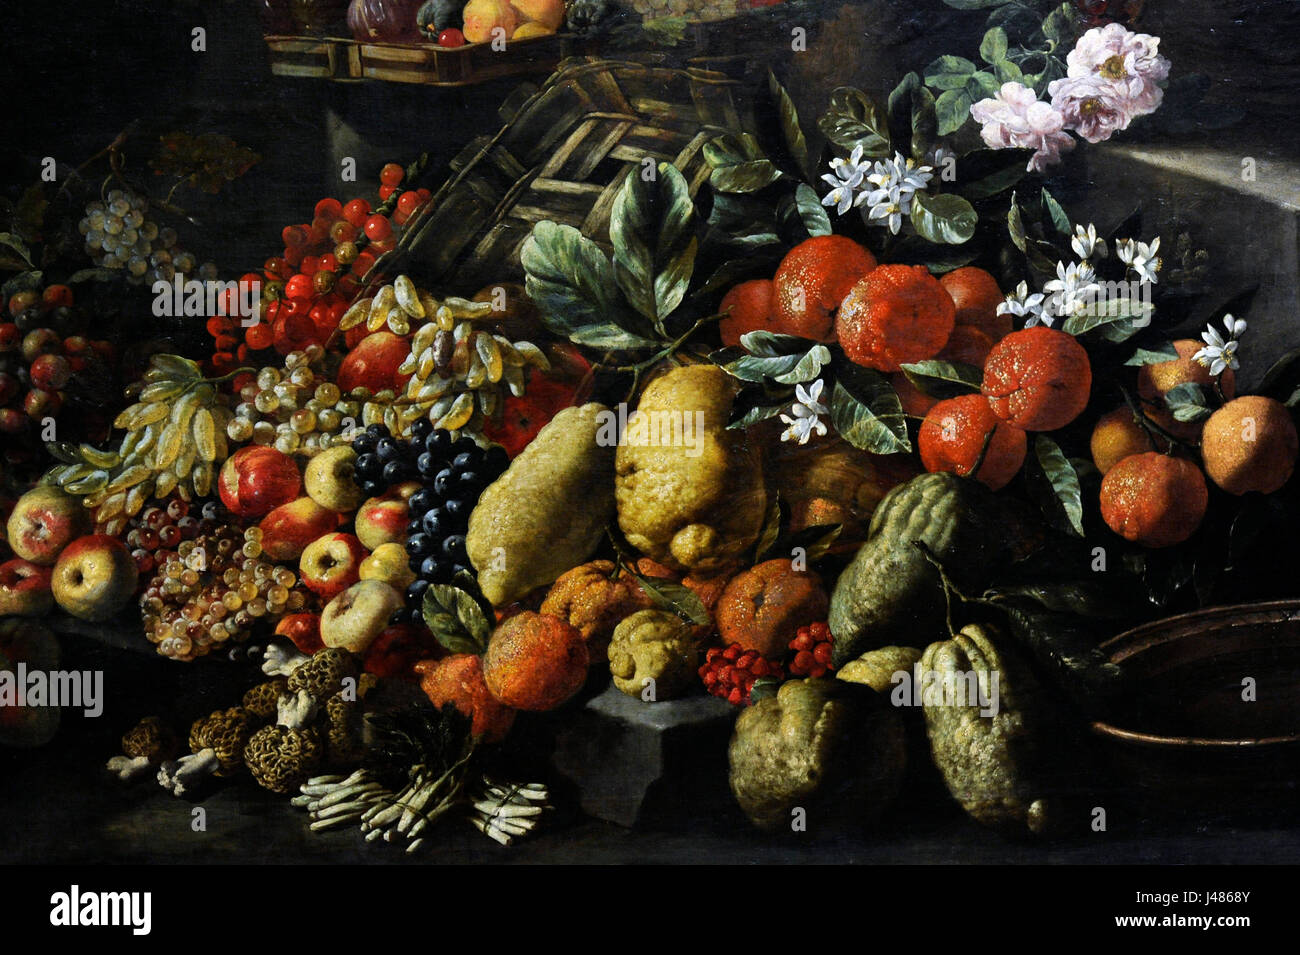 Barocke. Abraham Brueghel (1631-1697). Giuseppe Ruoppolo (?-1710). Stillleben mit Früchten und Blumen, 1680-85. Detail. Öl auf Leinwand. Nationales Museum von Capodimonte. Neapel. Italien. Stockfoto